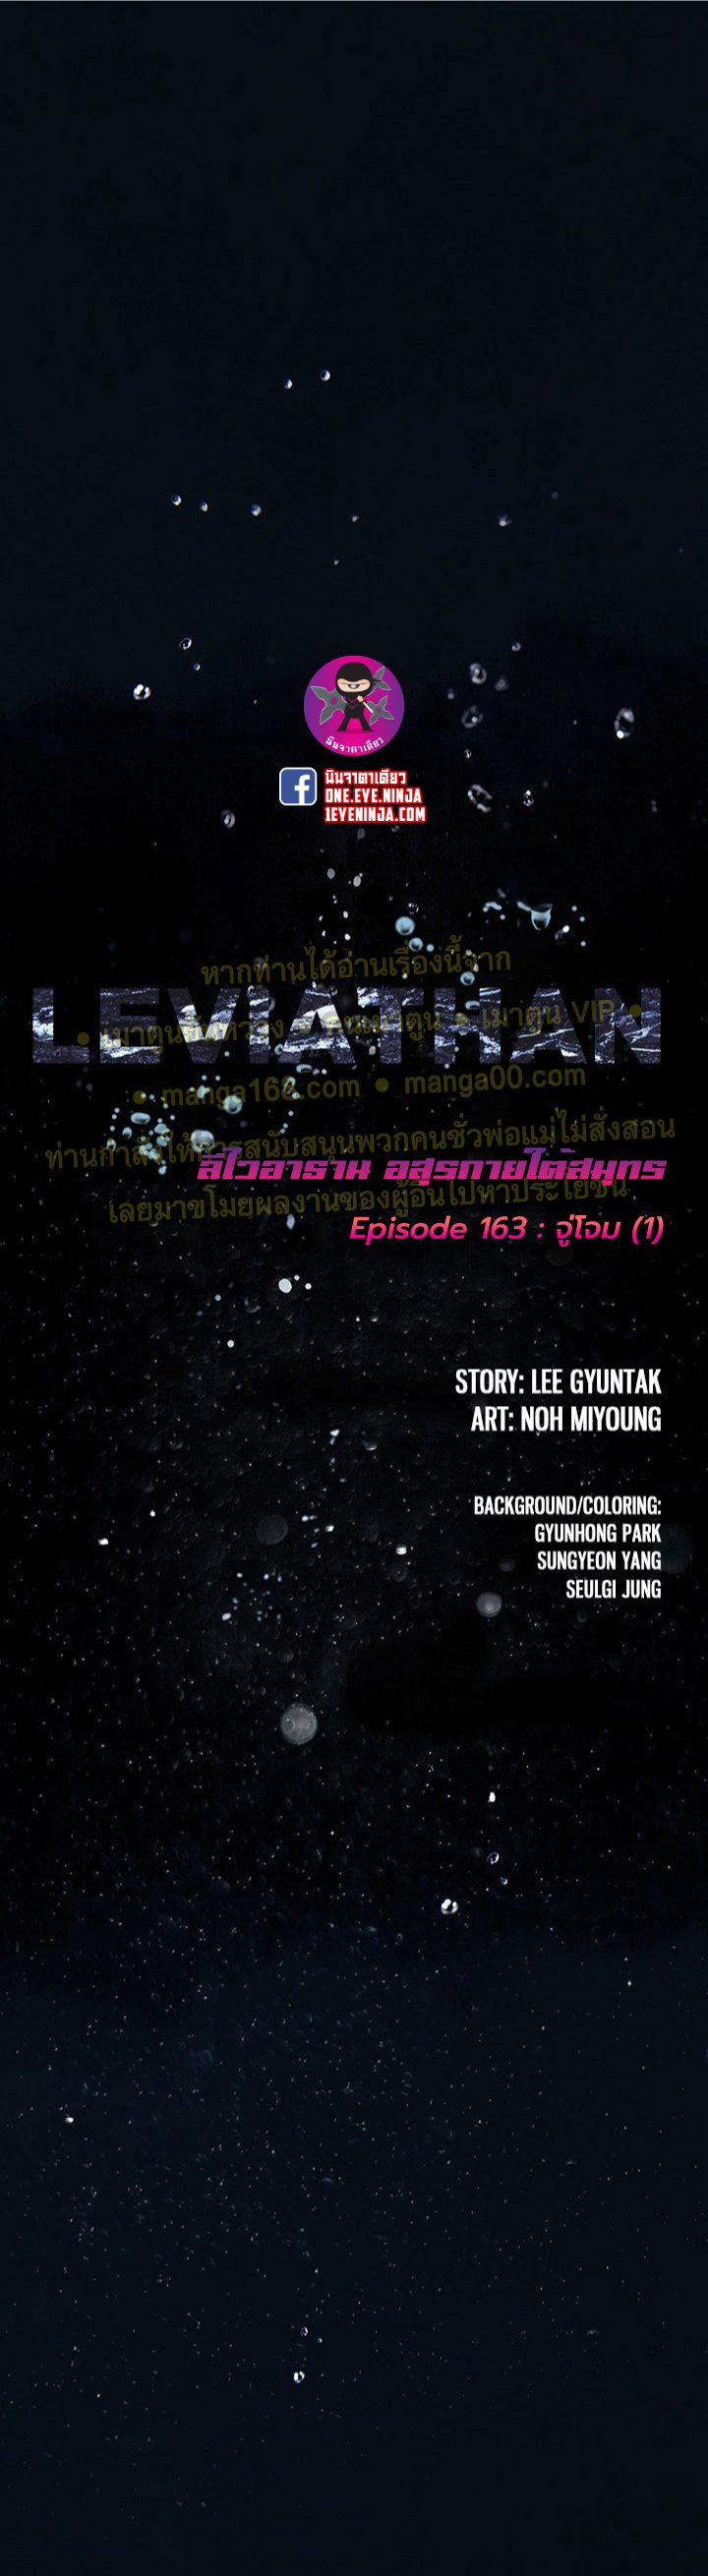 Leviathan163 01